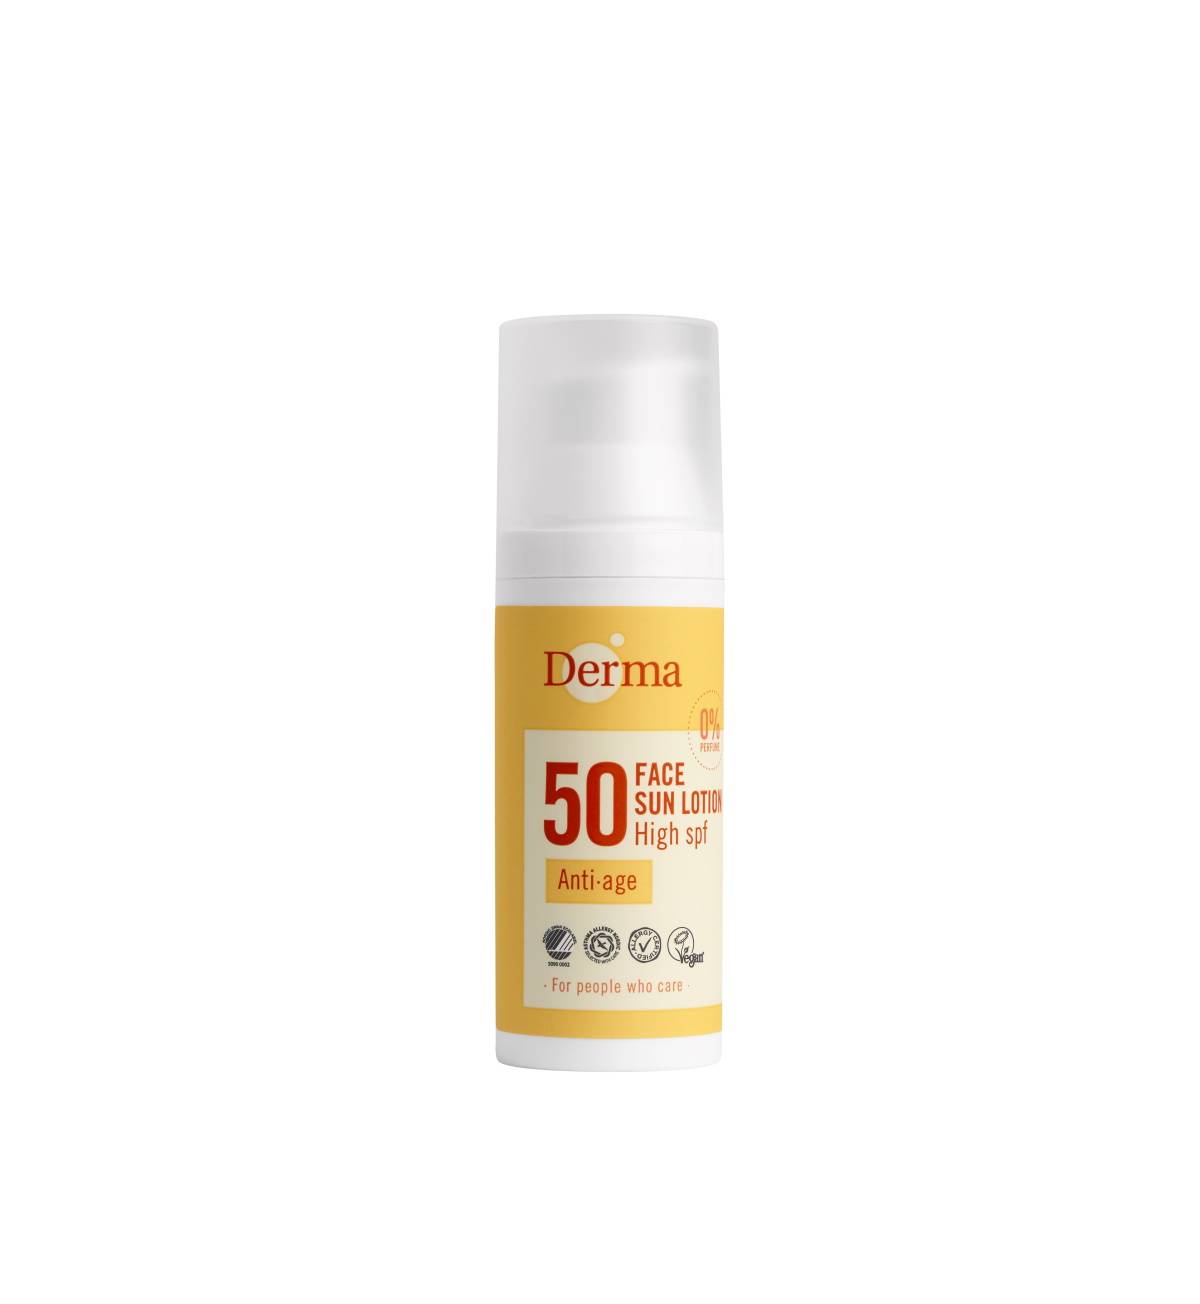 Kosmetyki duńskiej marki Derma Sun to ochrona przeciwsłoneczna dla skóry wrażliwej, alergicznej i dziecięcej.